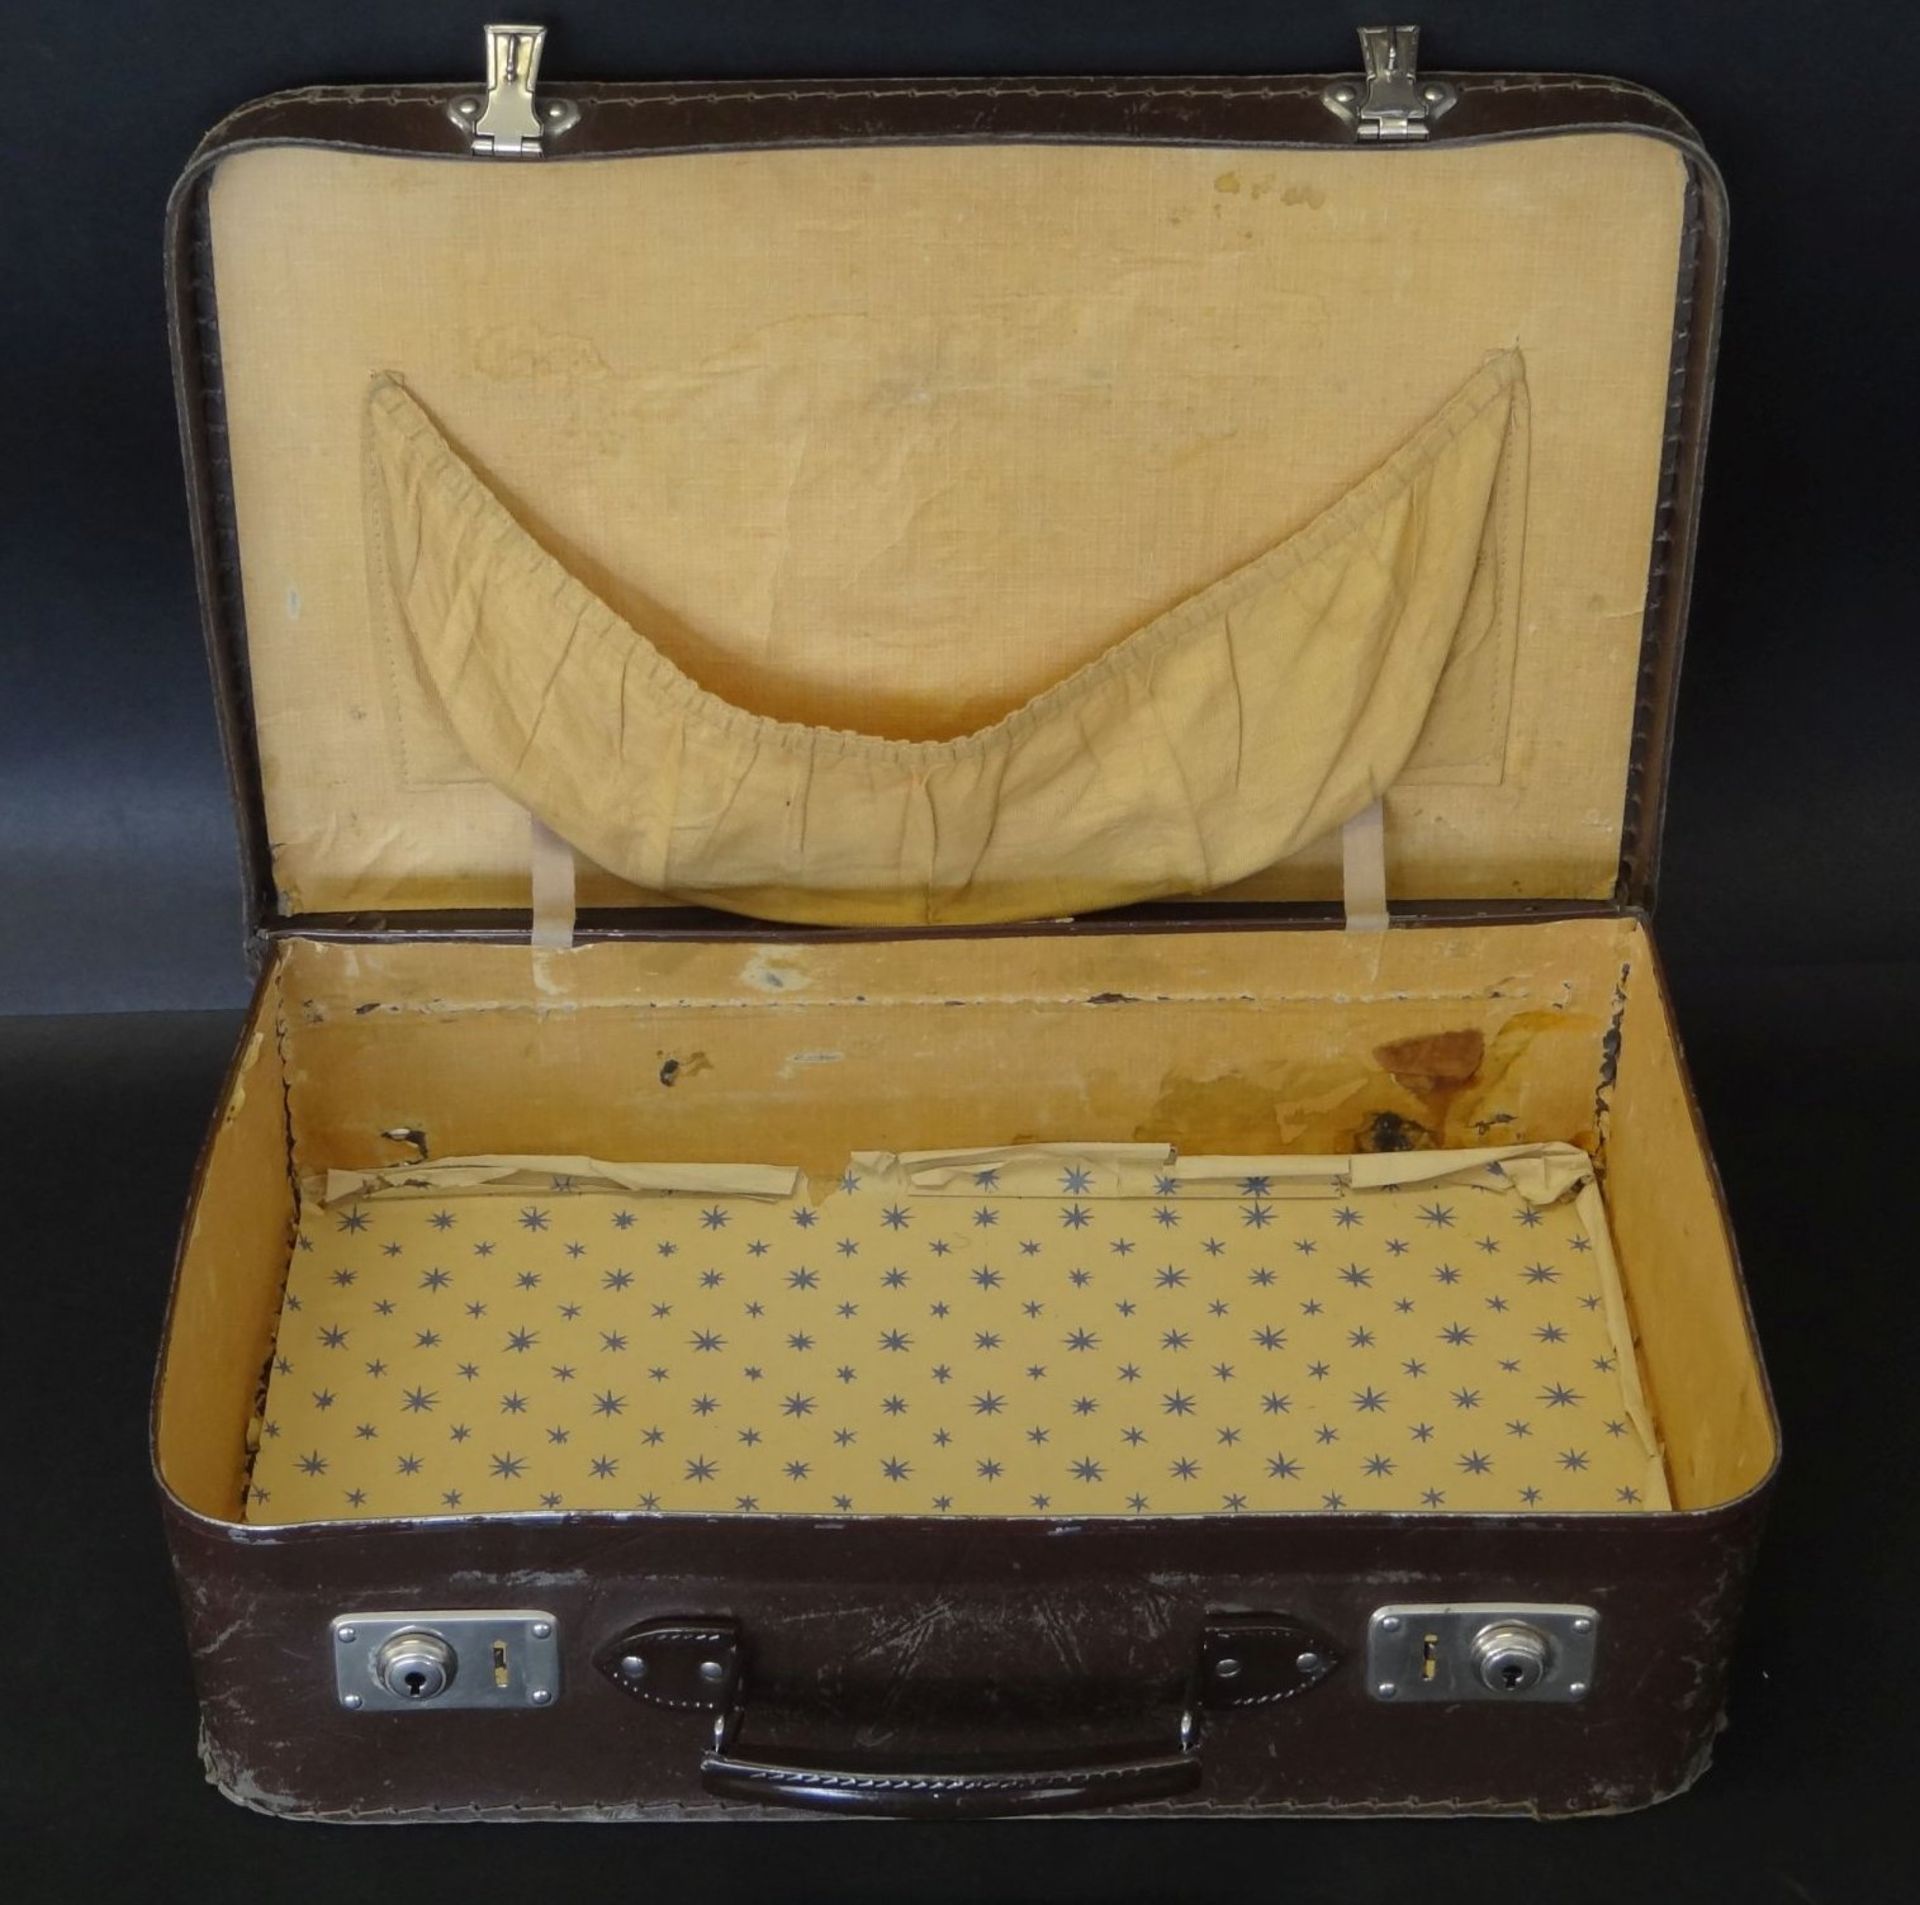 kl. Handkoffer um 1940, Alters-u. Gebrauchsspuren, H-11 cm, 25x40 cm, - Bild 3 aus 3